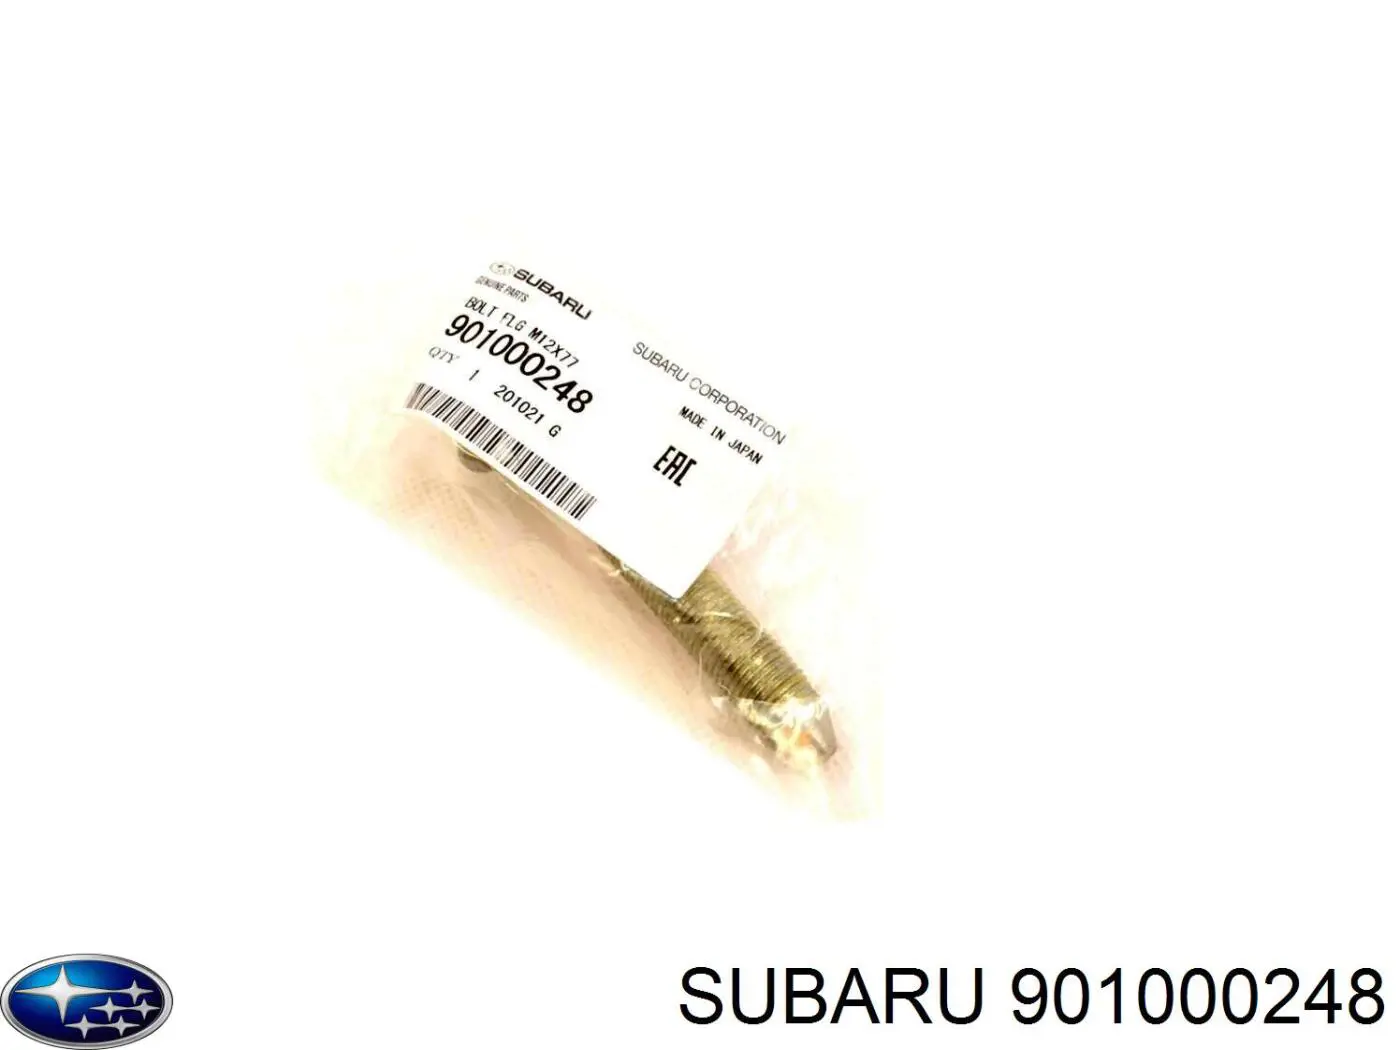 Perno de la atadura de la viga delantera (el bastidor auxiliar) para Subaru Forester (S11, SG)